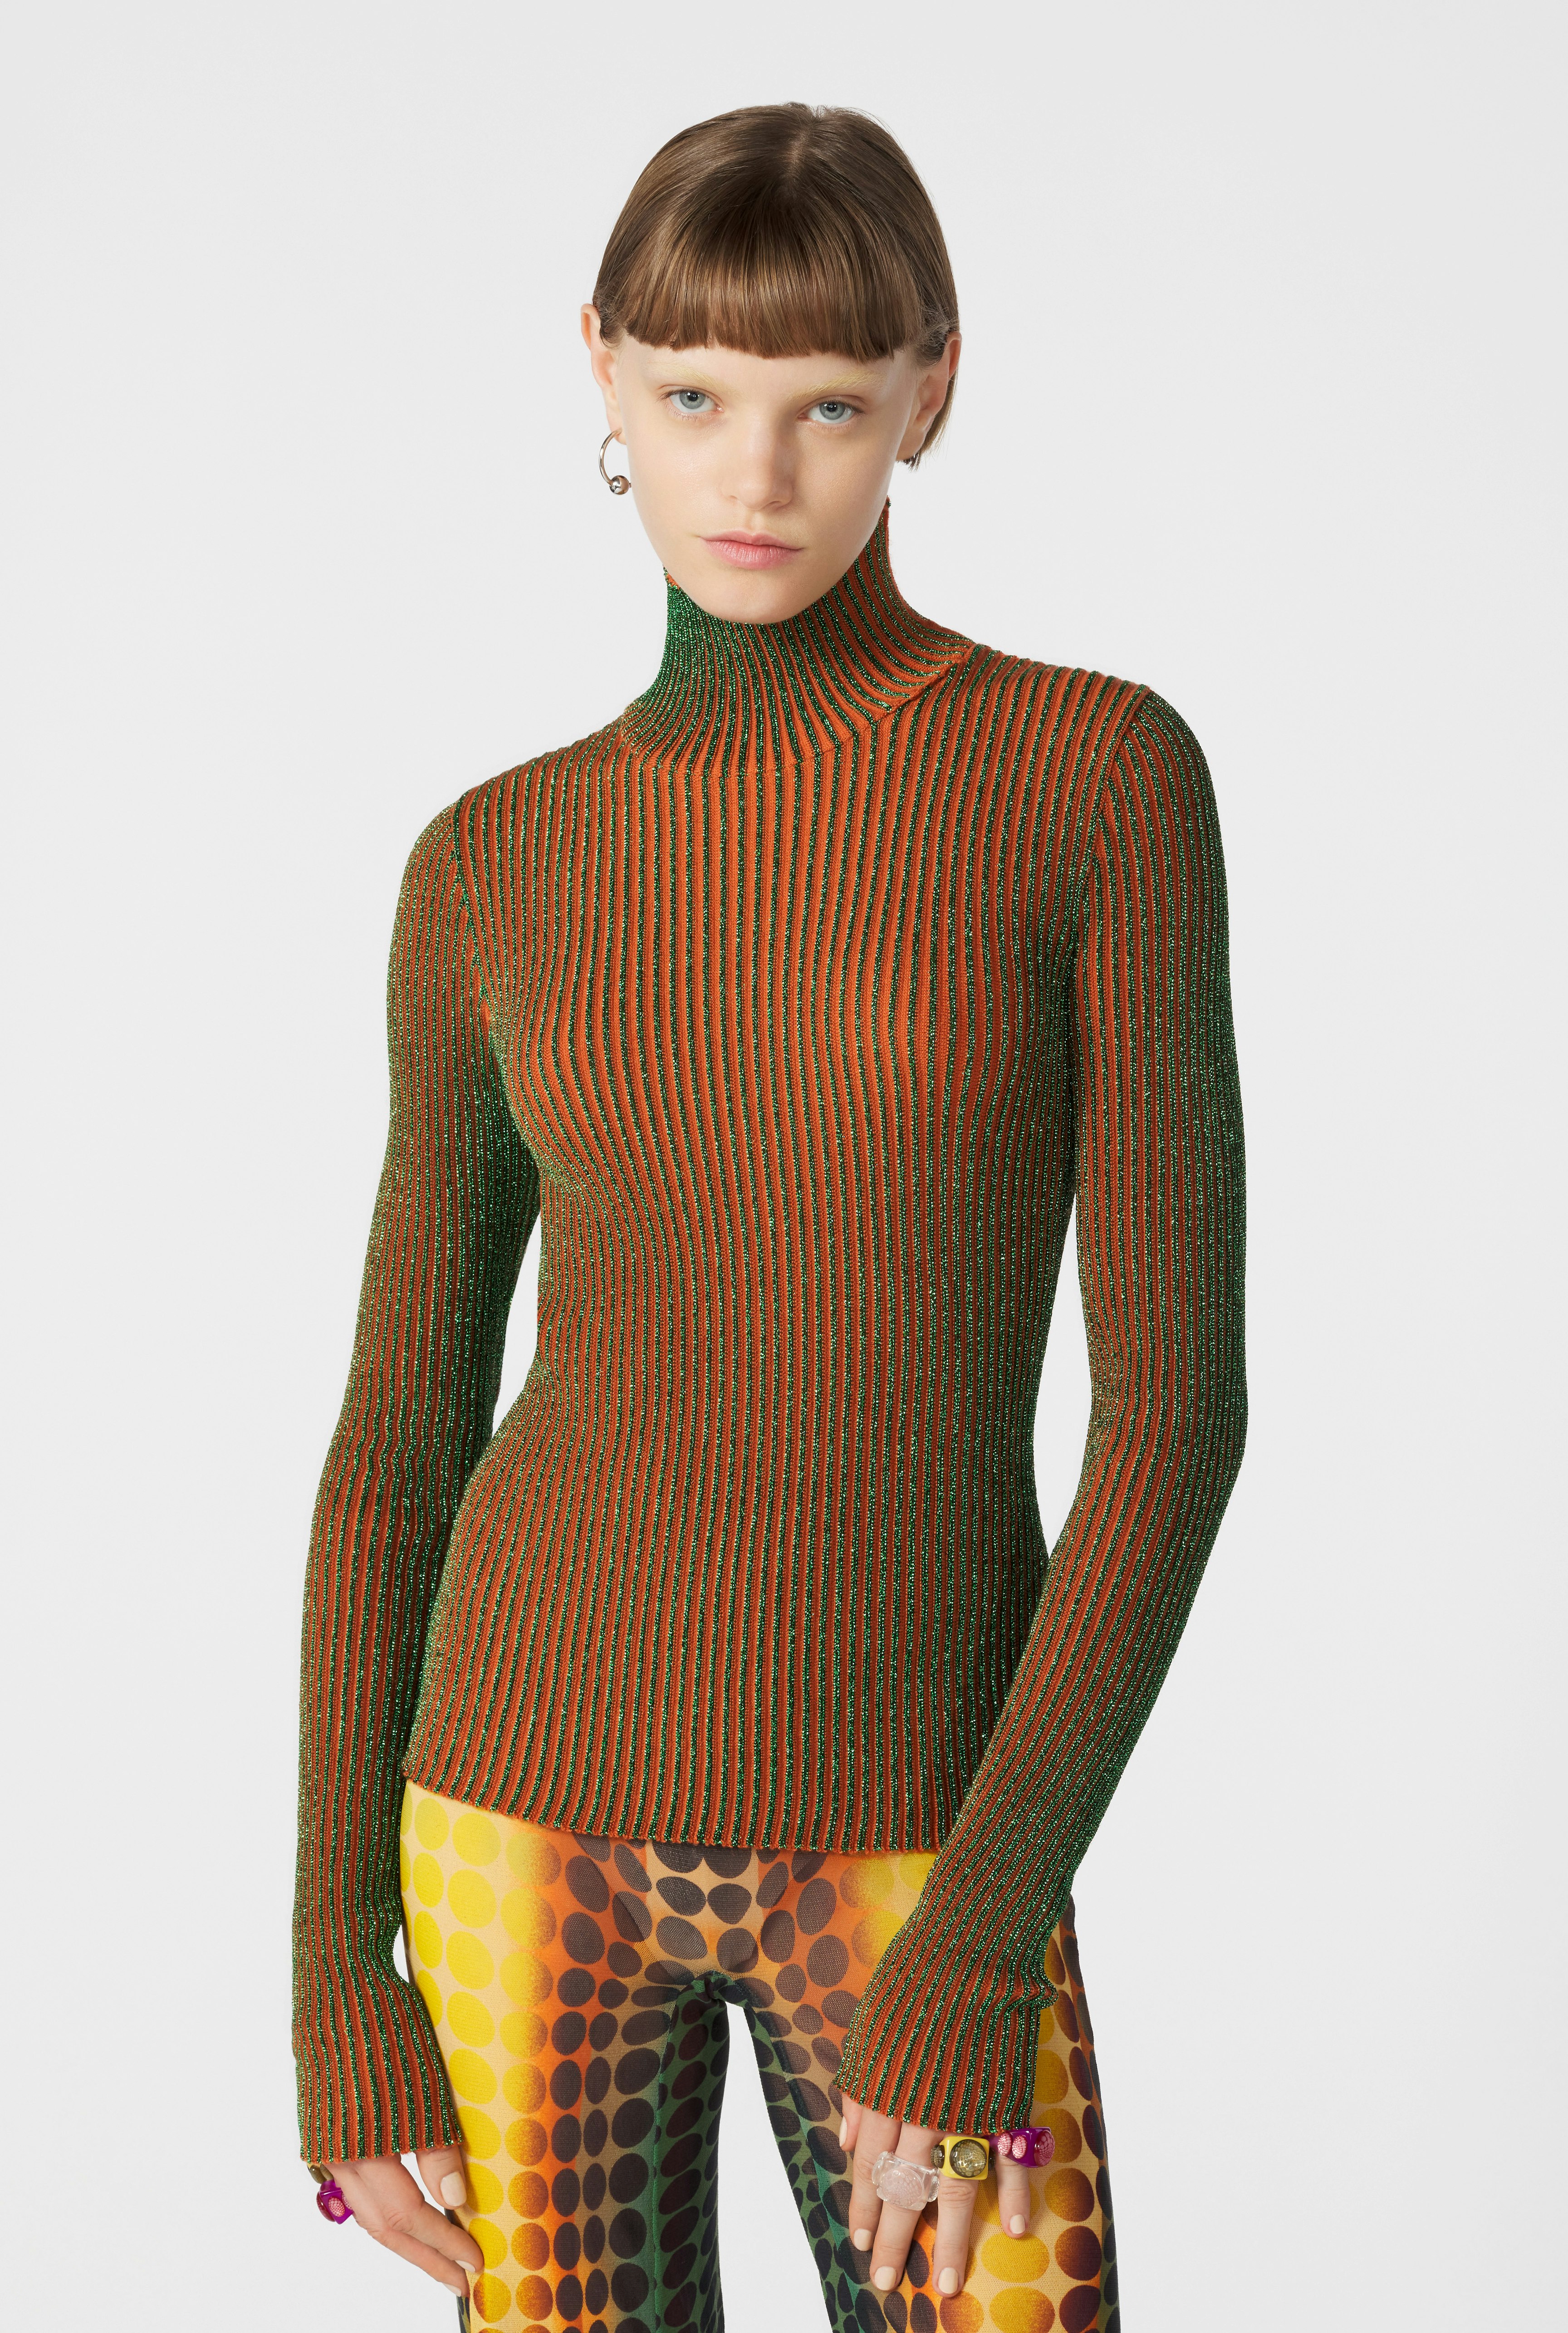 The Orange Cyber Knit Top Jean Paul Gaultier